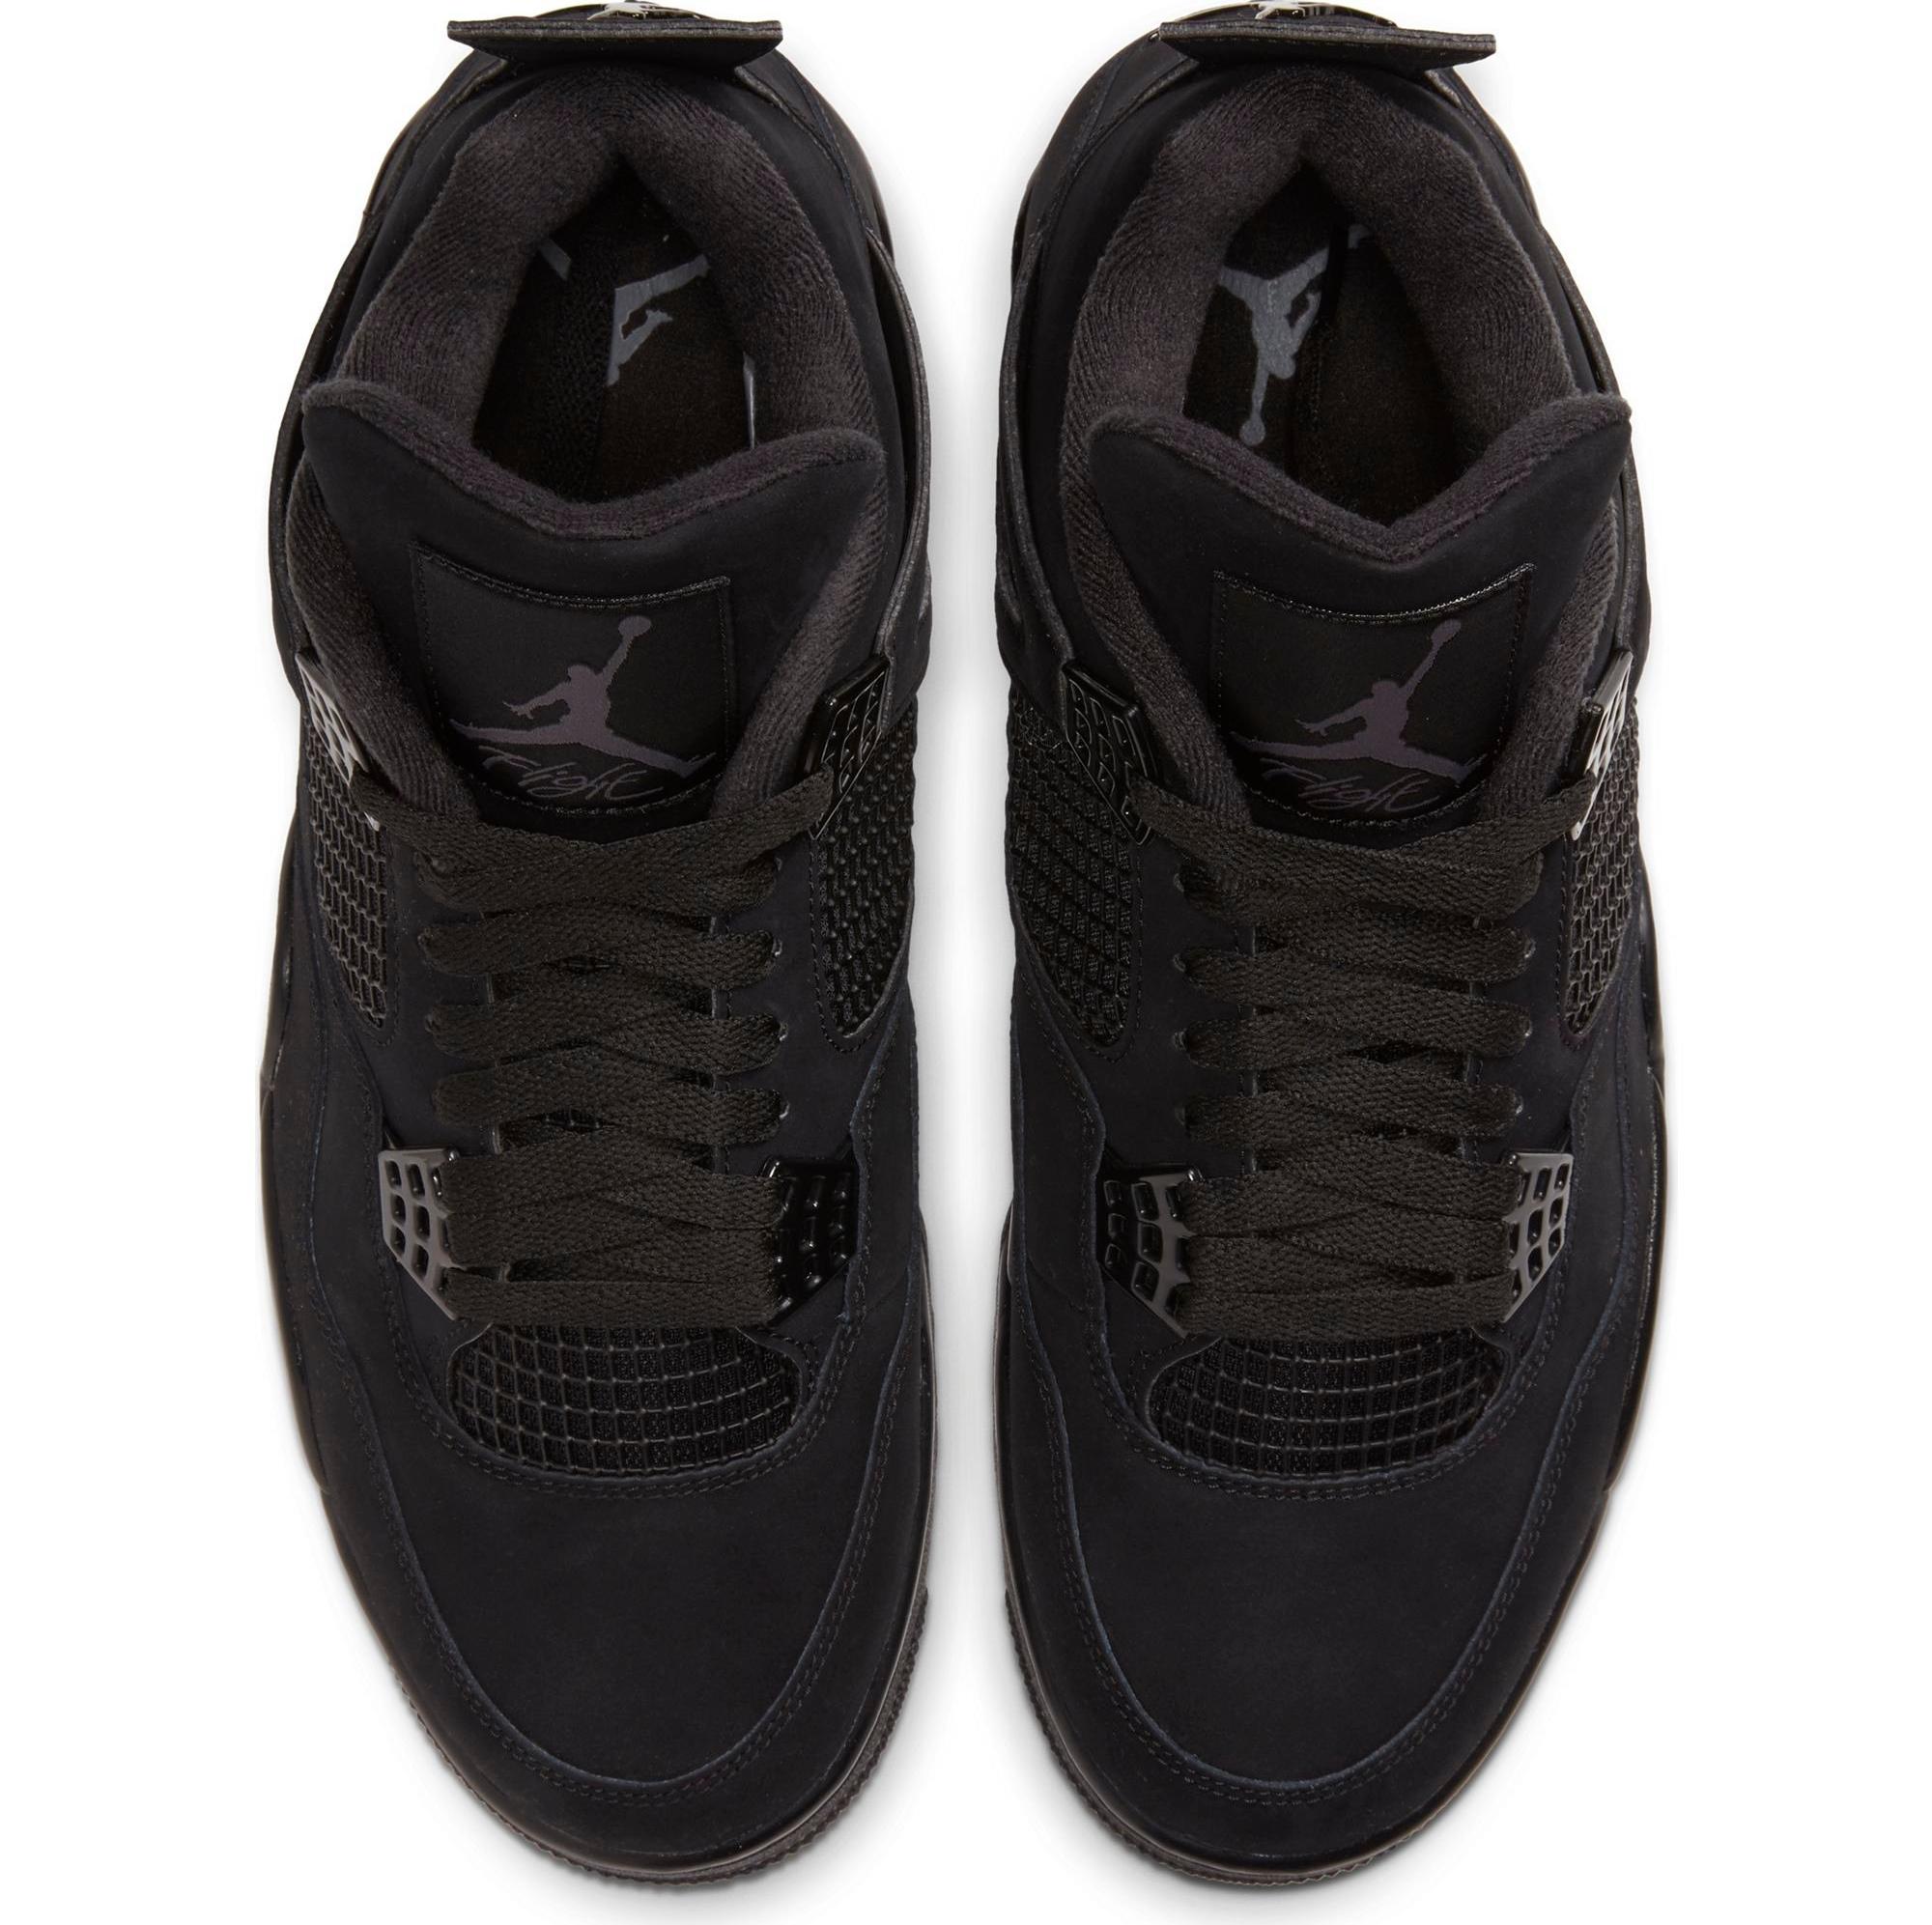 Jordan Retro 4 Black Cat - Comprar en Brand Shoes